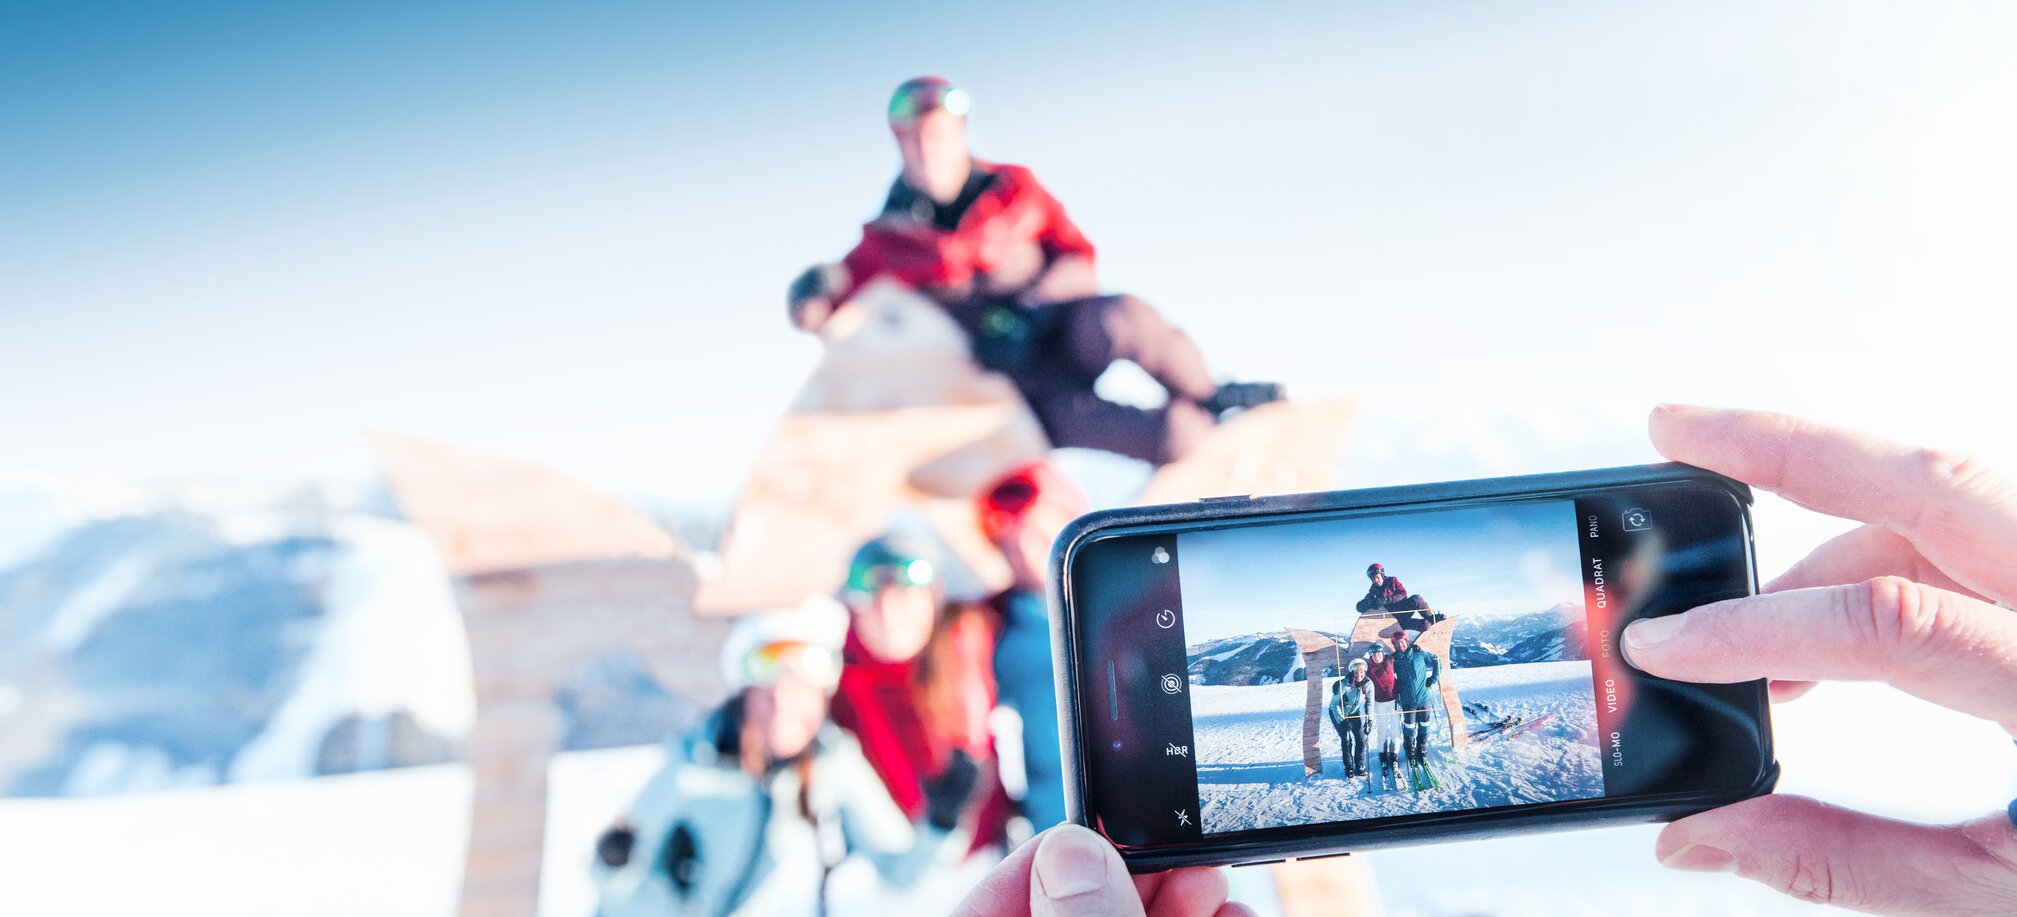 Selfie Time - sammle tolle Erinnerungen auf den Pisten in Ski amadé